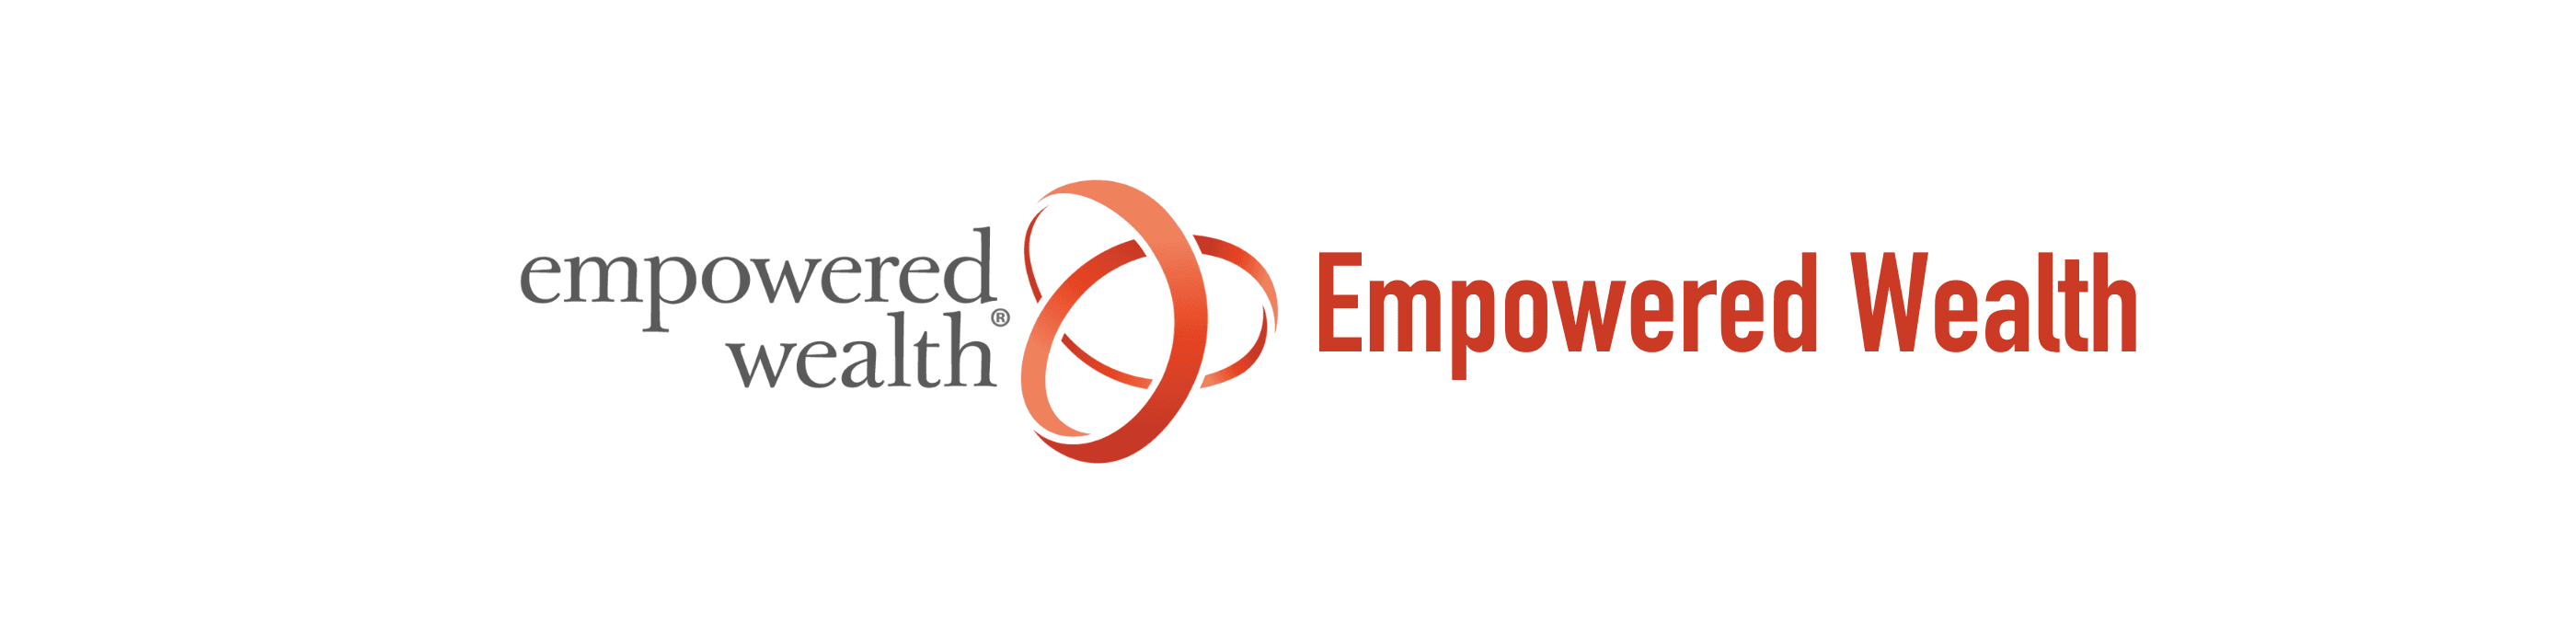 EmpoweredWealth banner